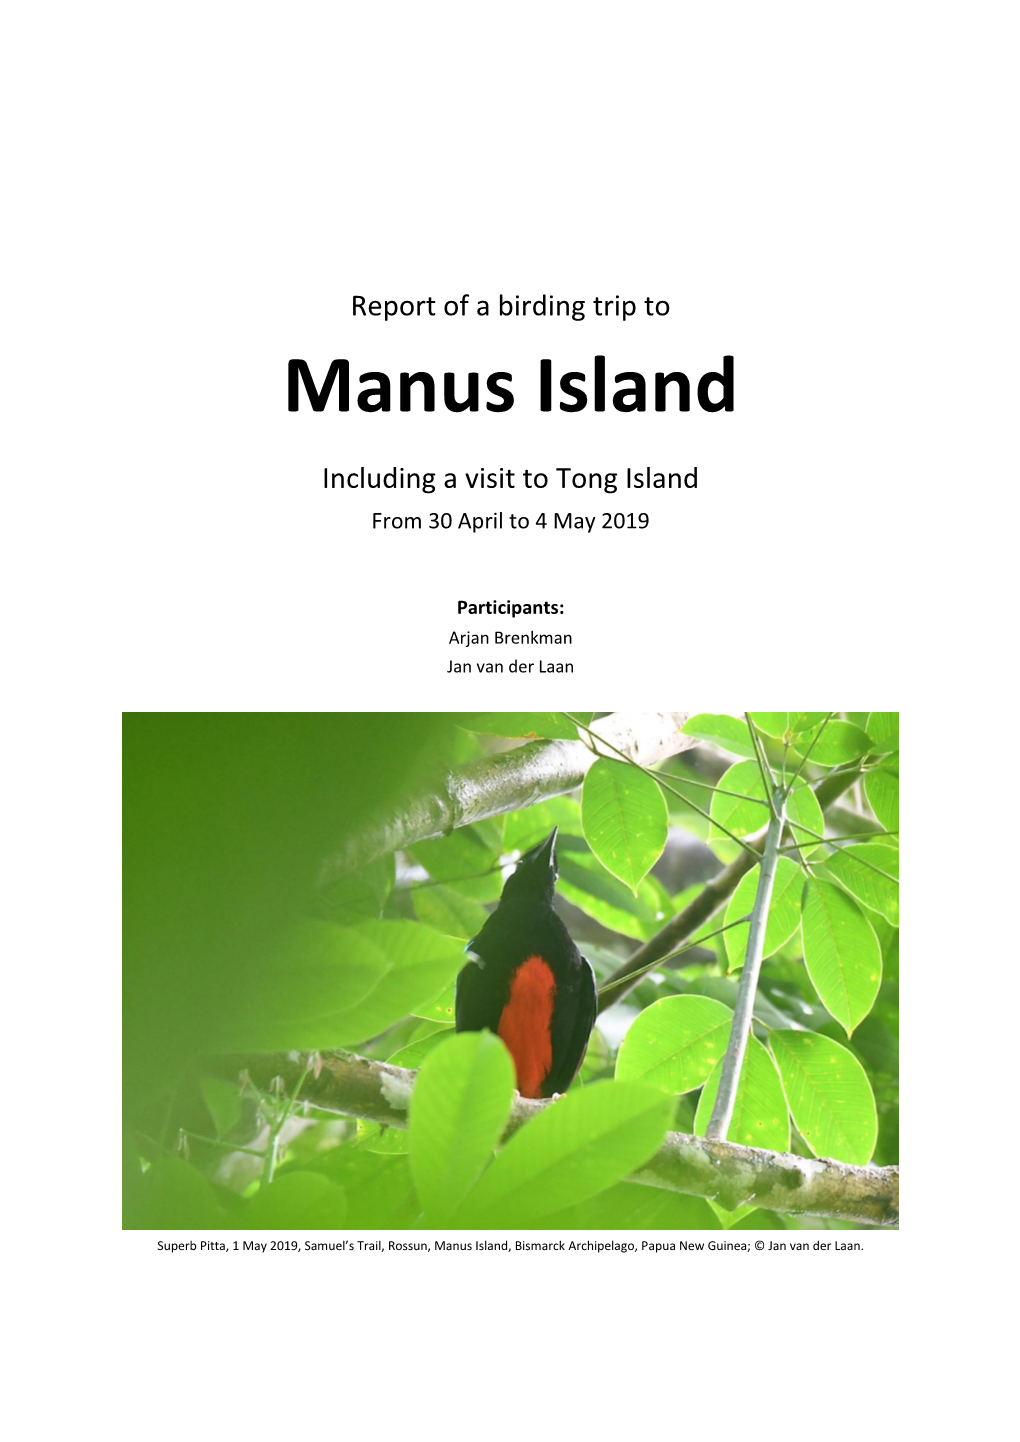 Manus Island